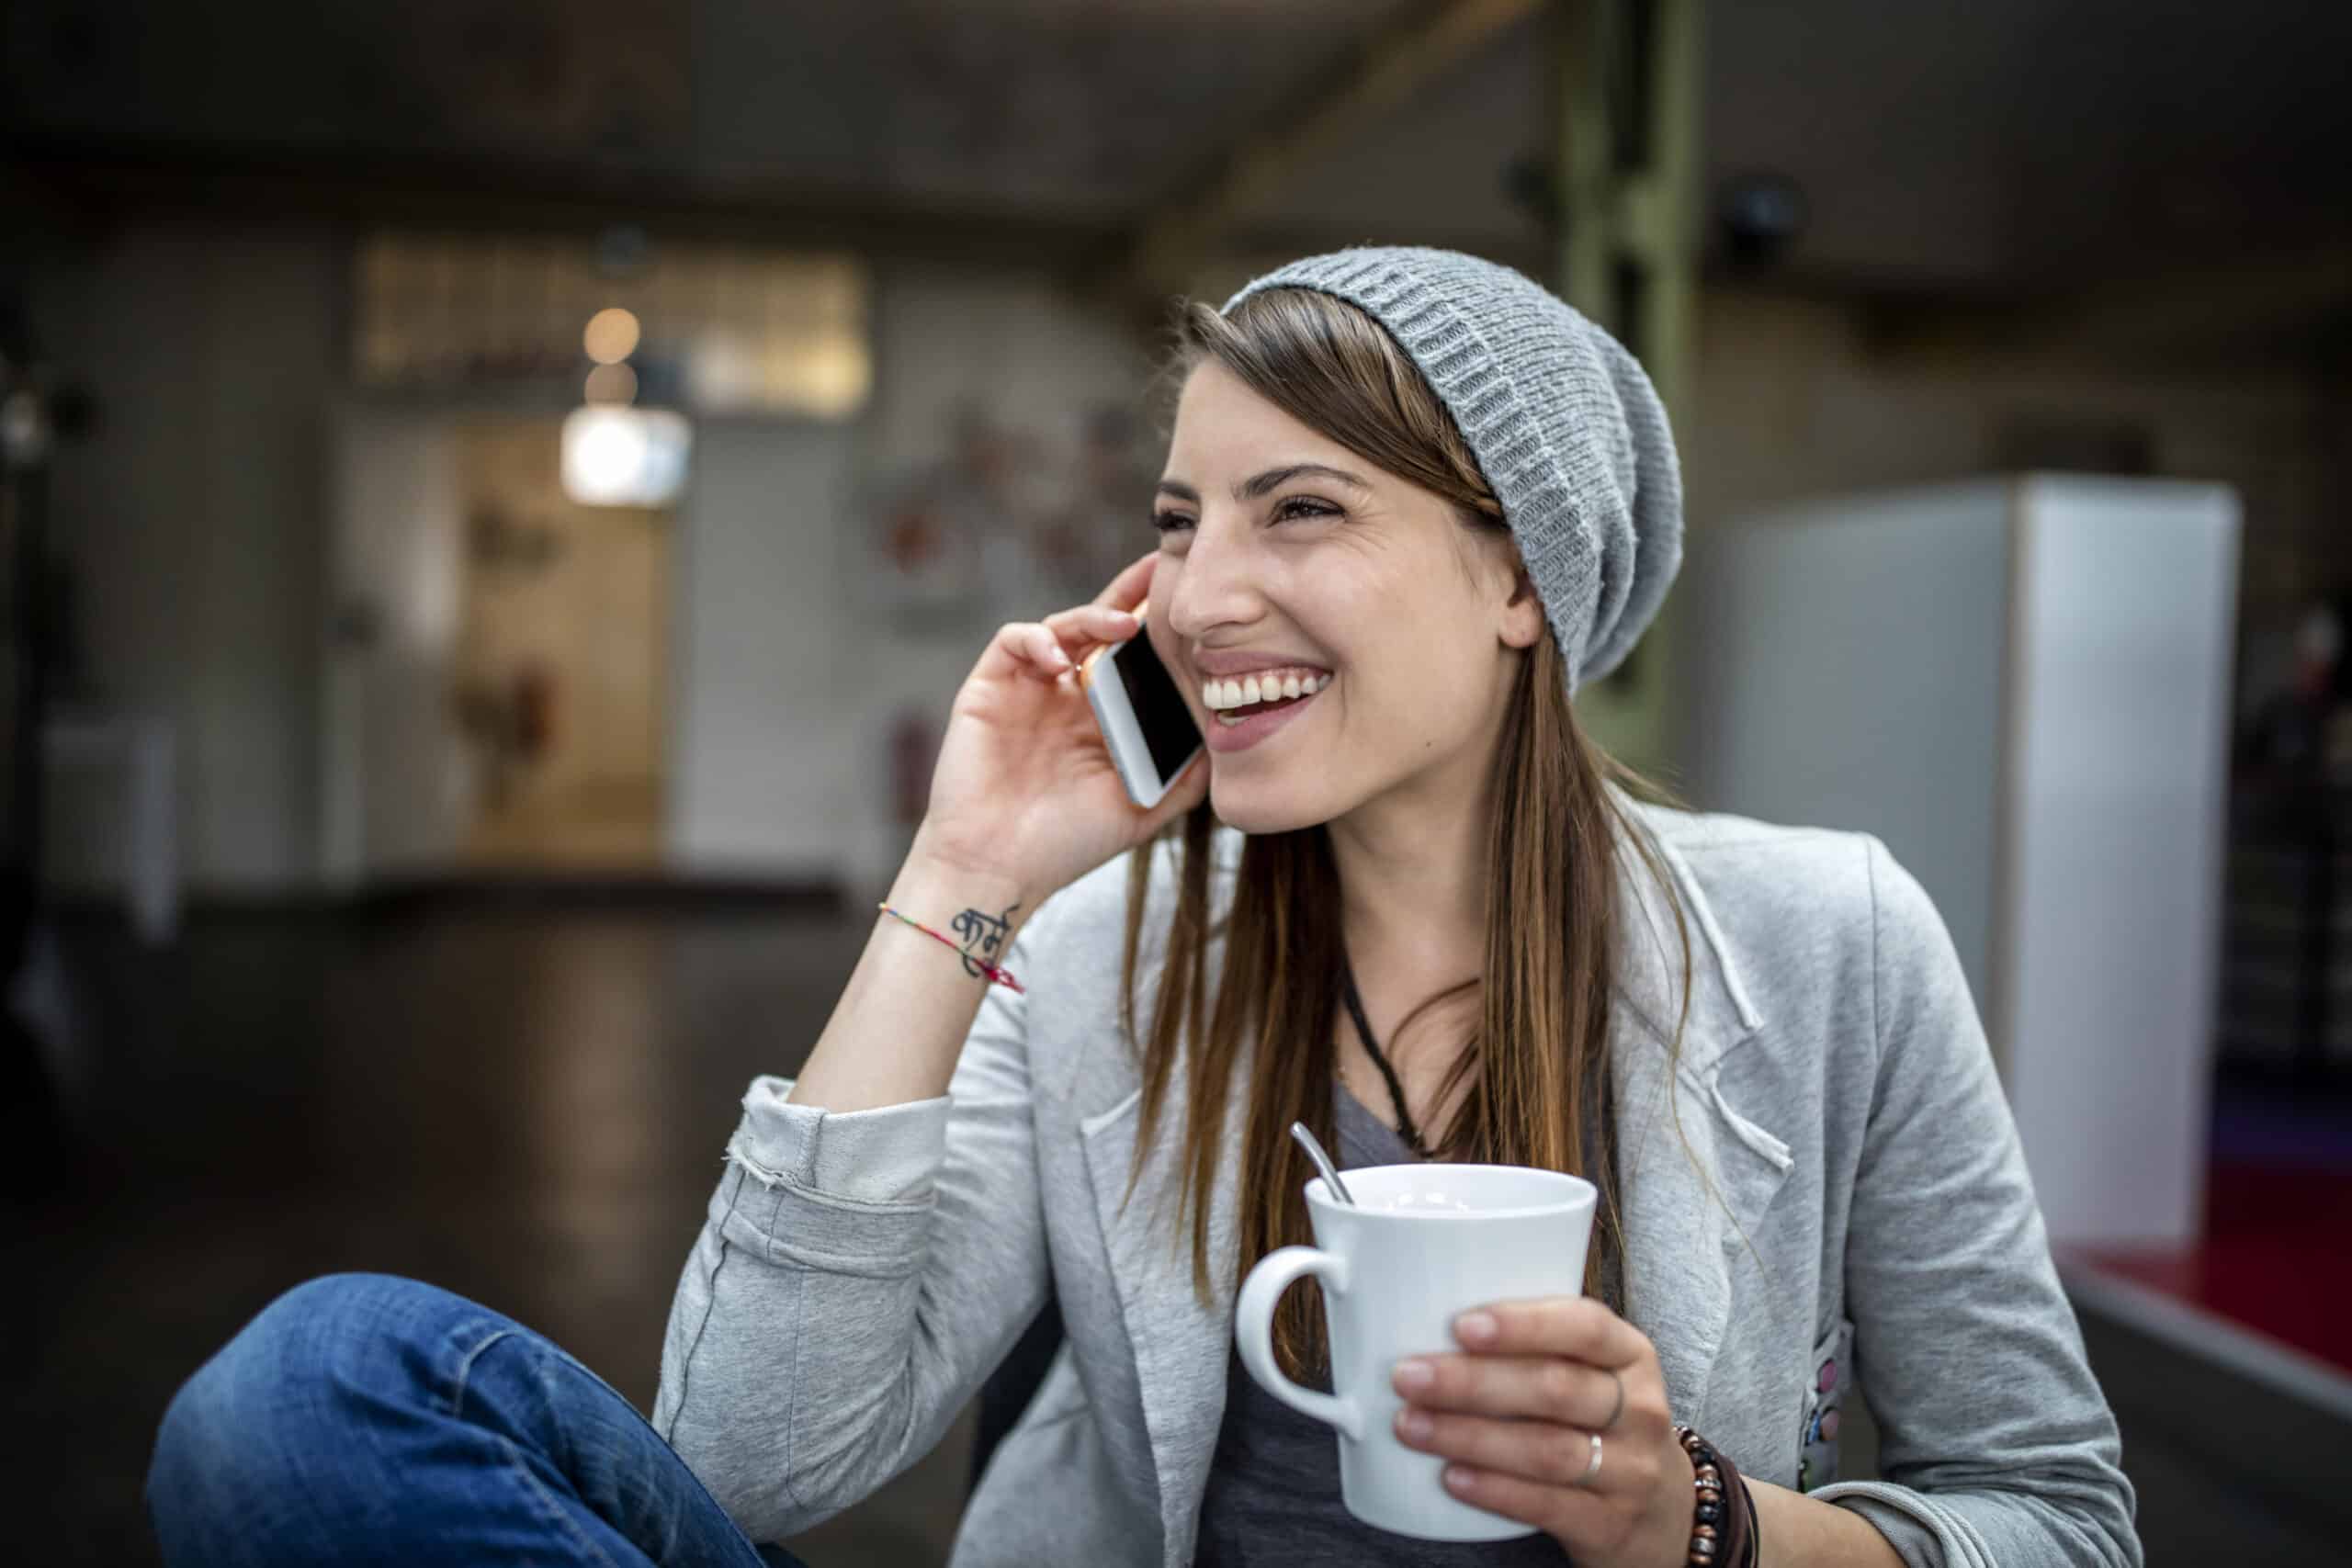 Eine fröhliche junge Frau mit Beanie-Mütze telefoniert, während sie eine weiße Kaffeetasse hält und in einer ungezwungenen Büroumgebung sitzt. Sie lacht herzlich. © Fotografie Tomas Rodriguez